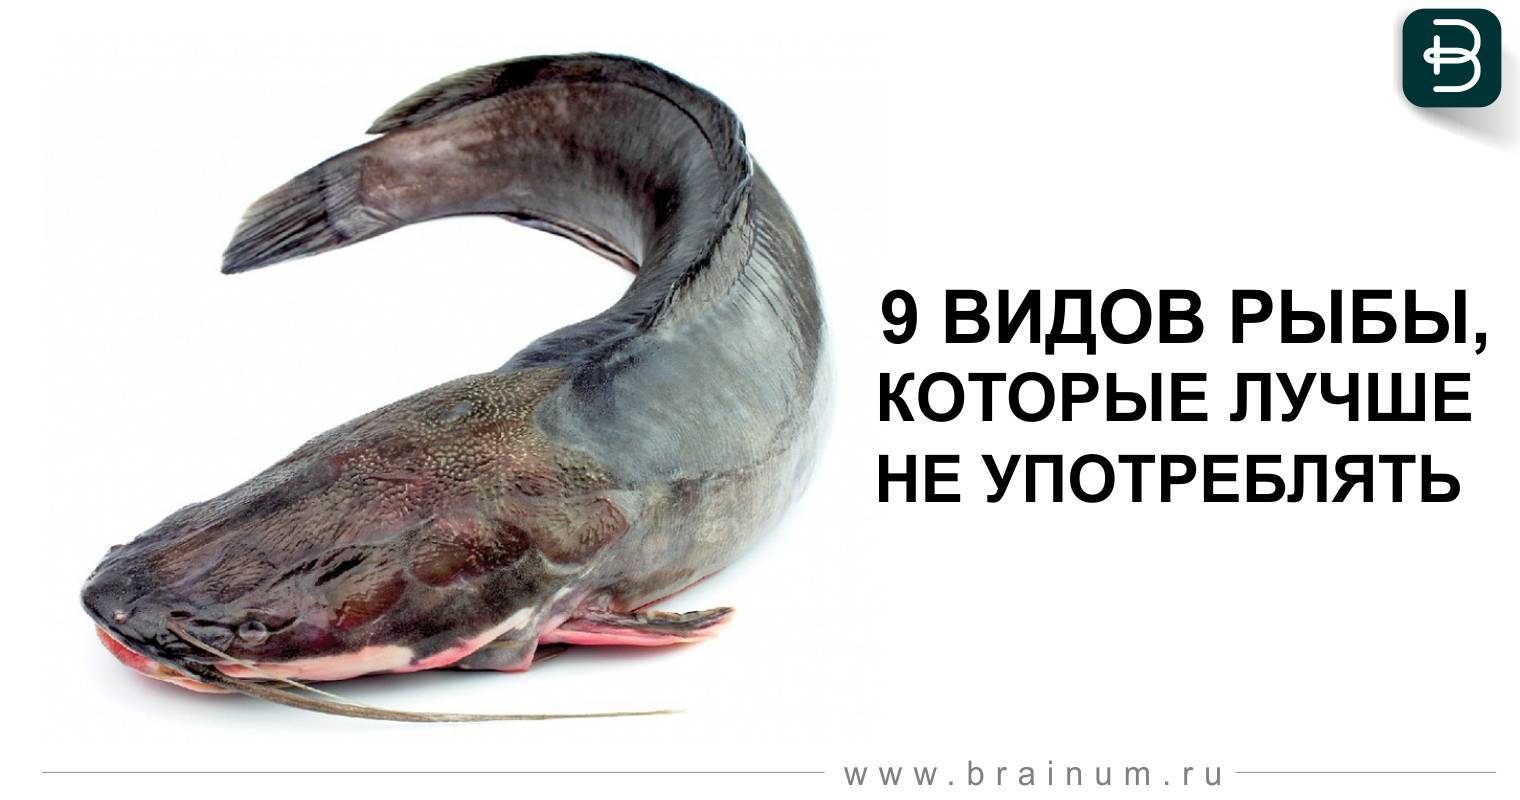 9 видов нежирной рыбы которая идеально подойдет для диеты